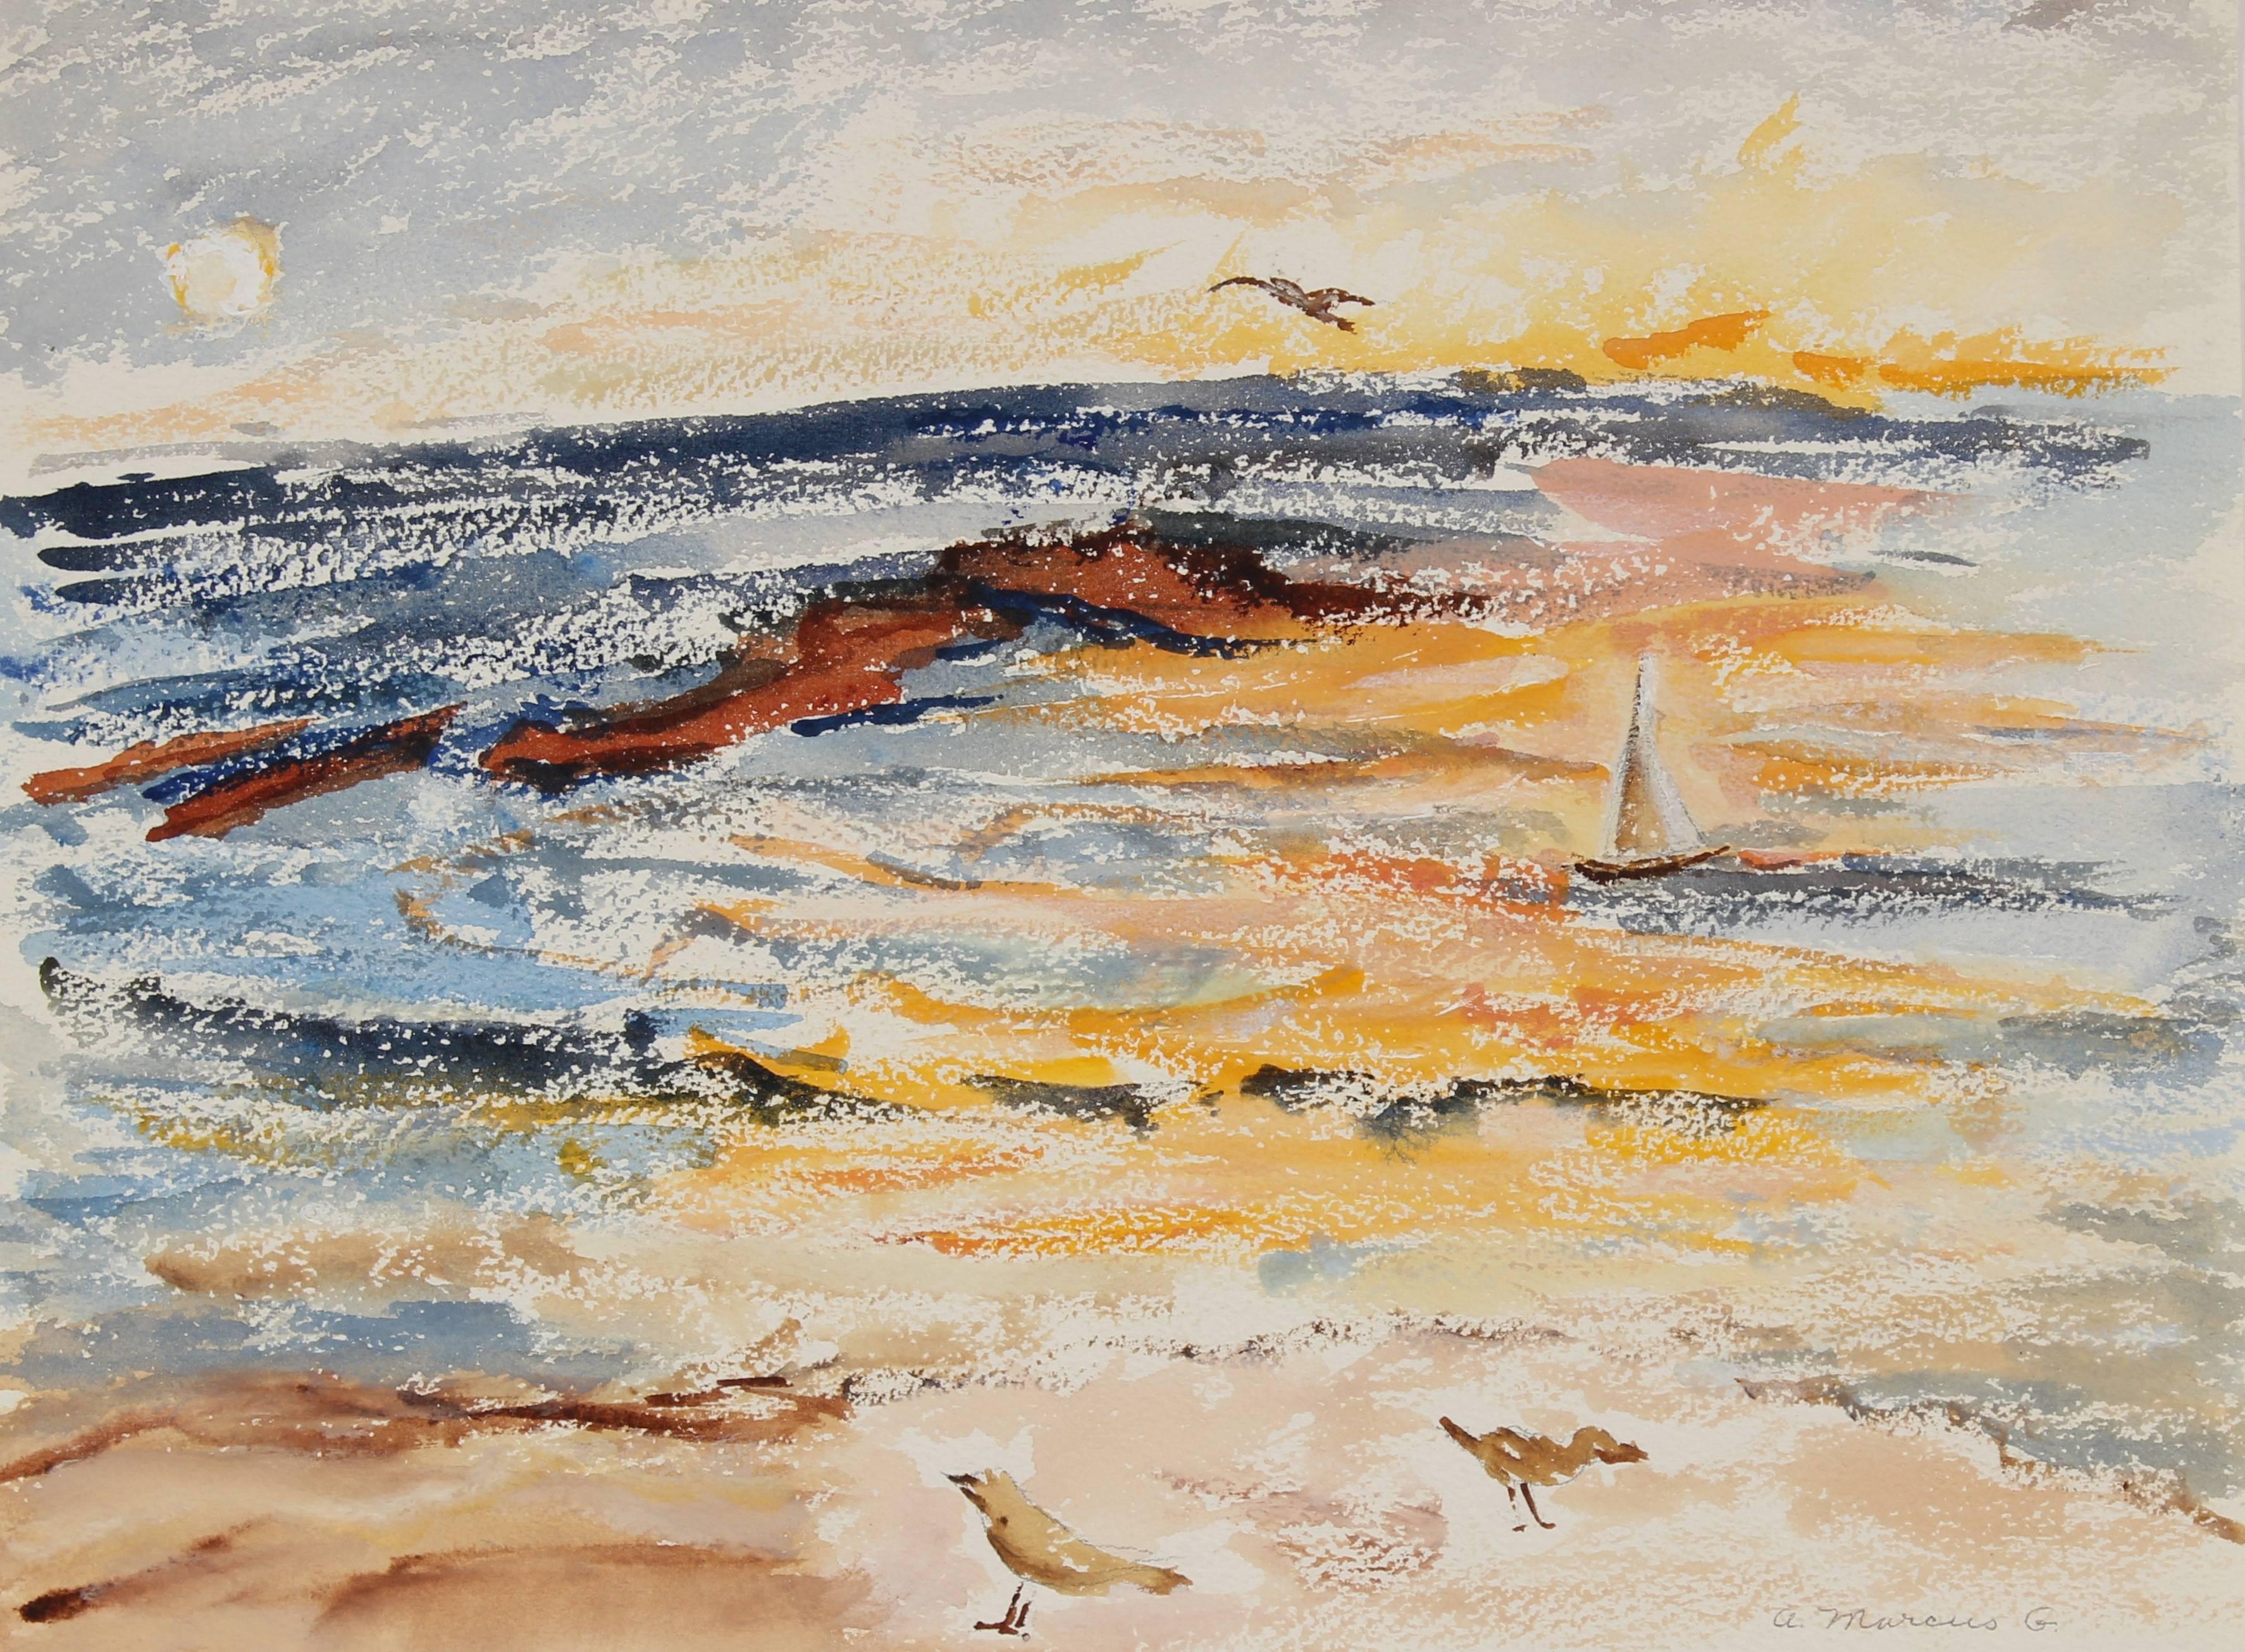 Anne Granick Landscape Art - "Malibu" California Seascape